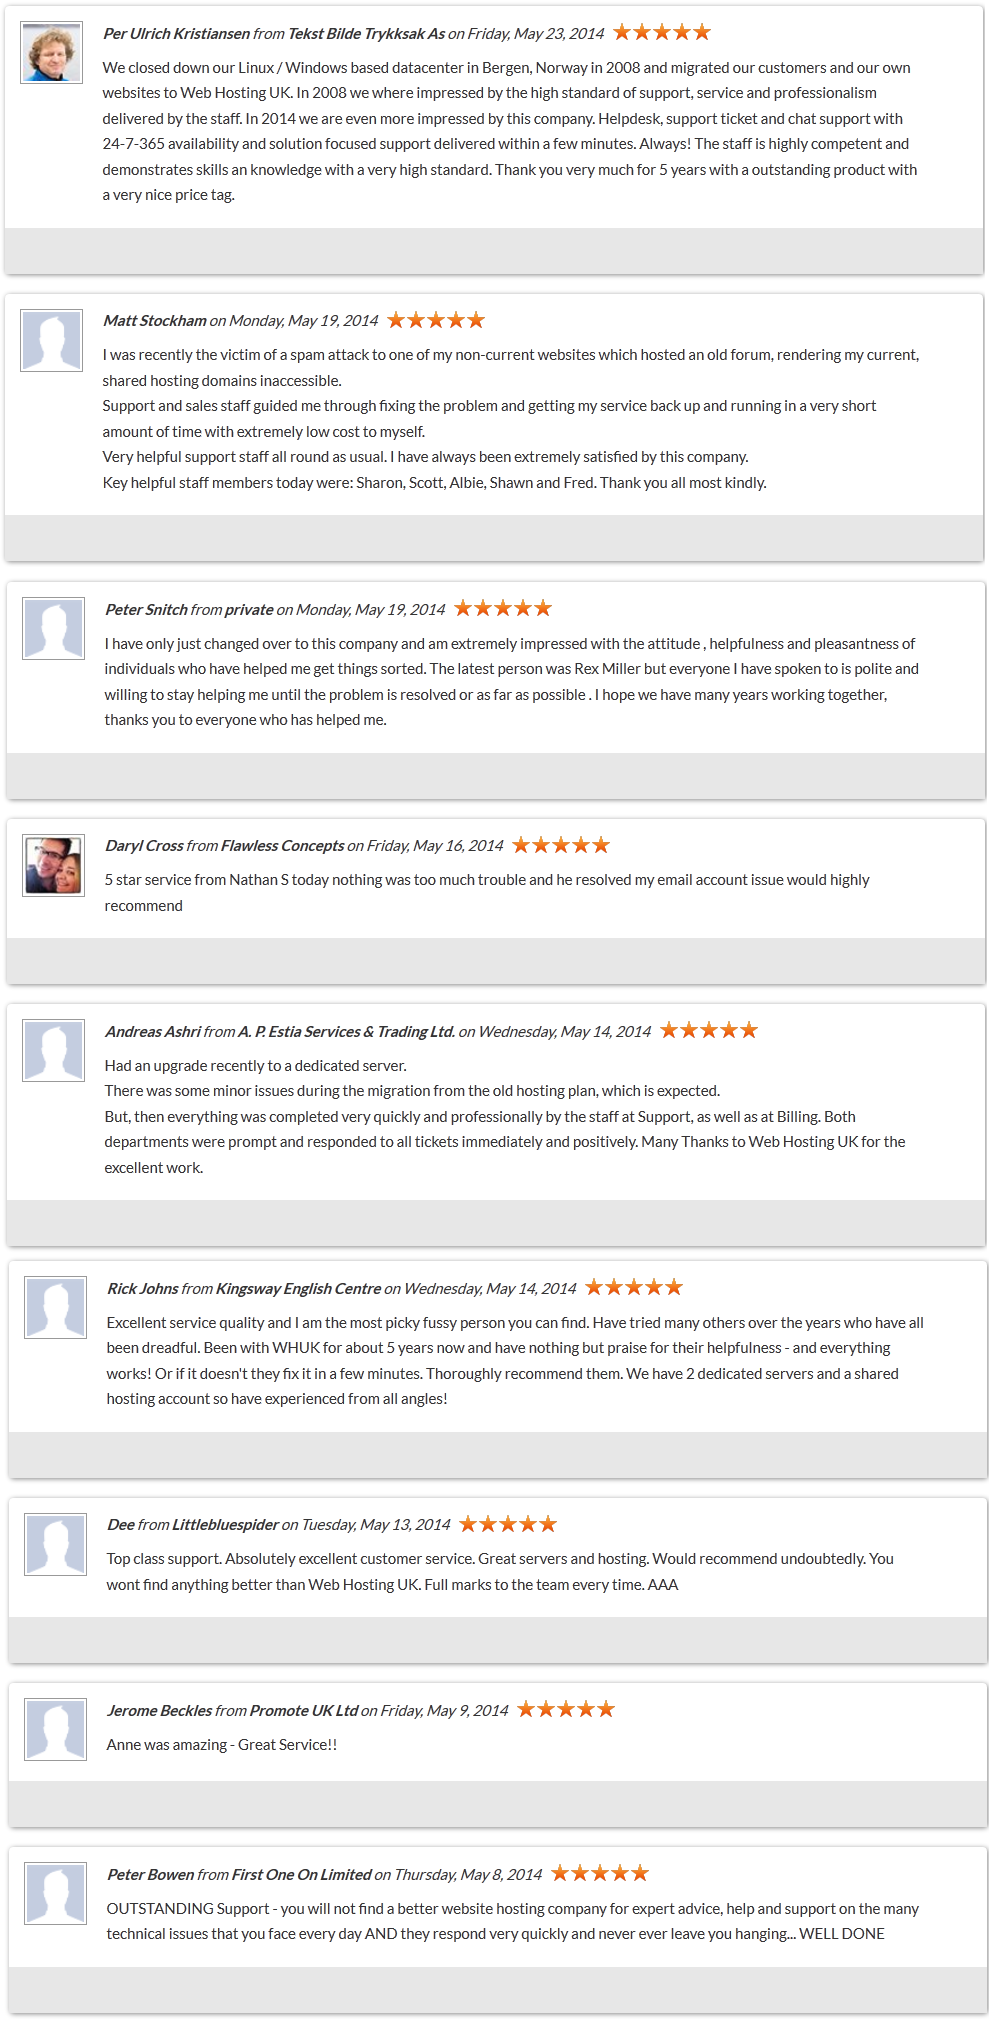 WHUK-Customer-Reviews-Feedback-May2014